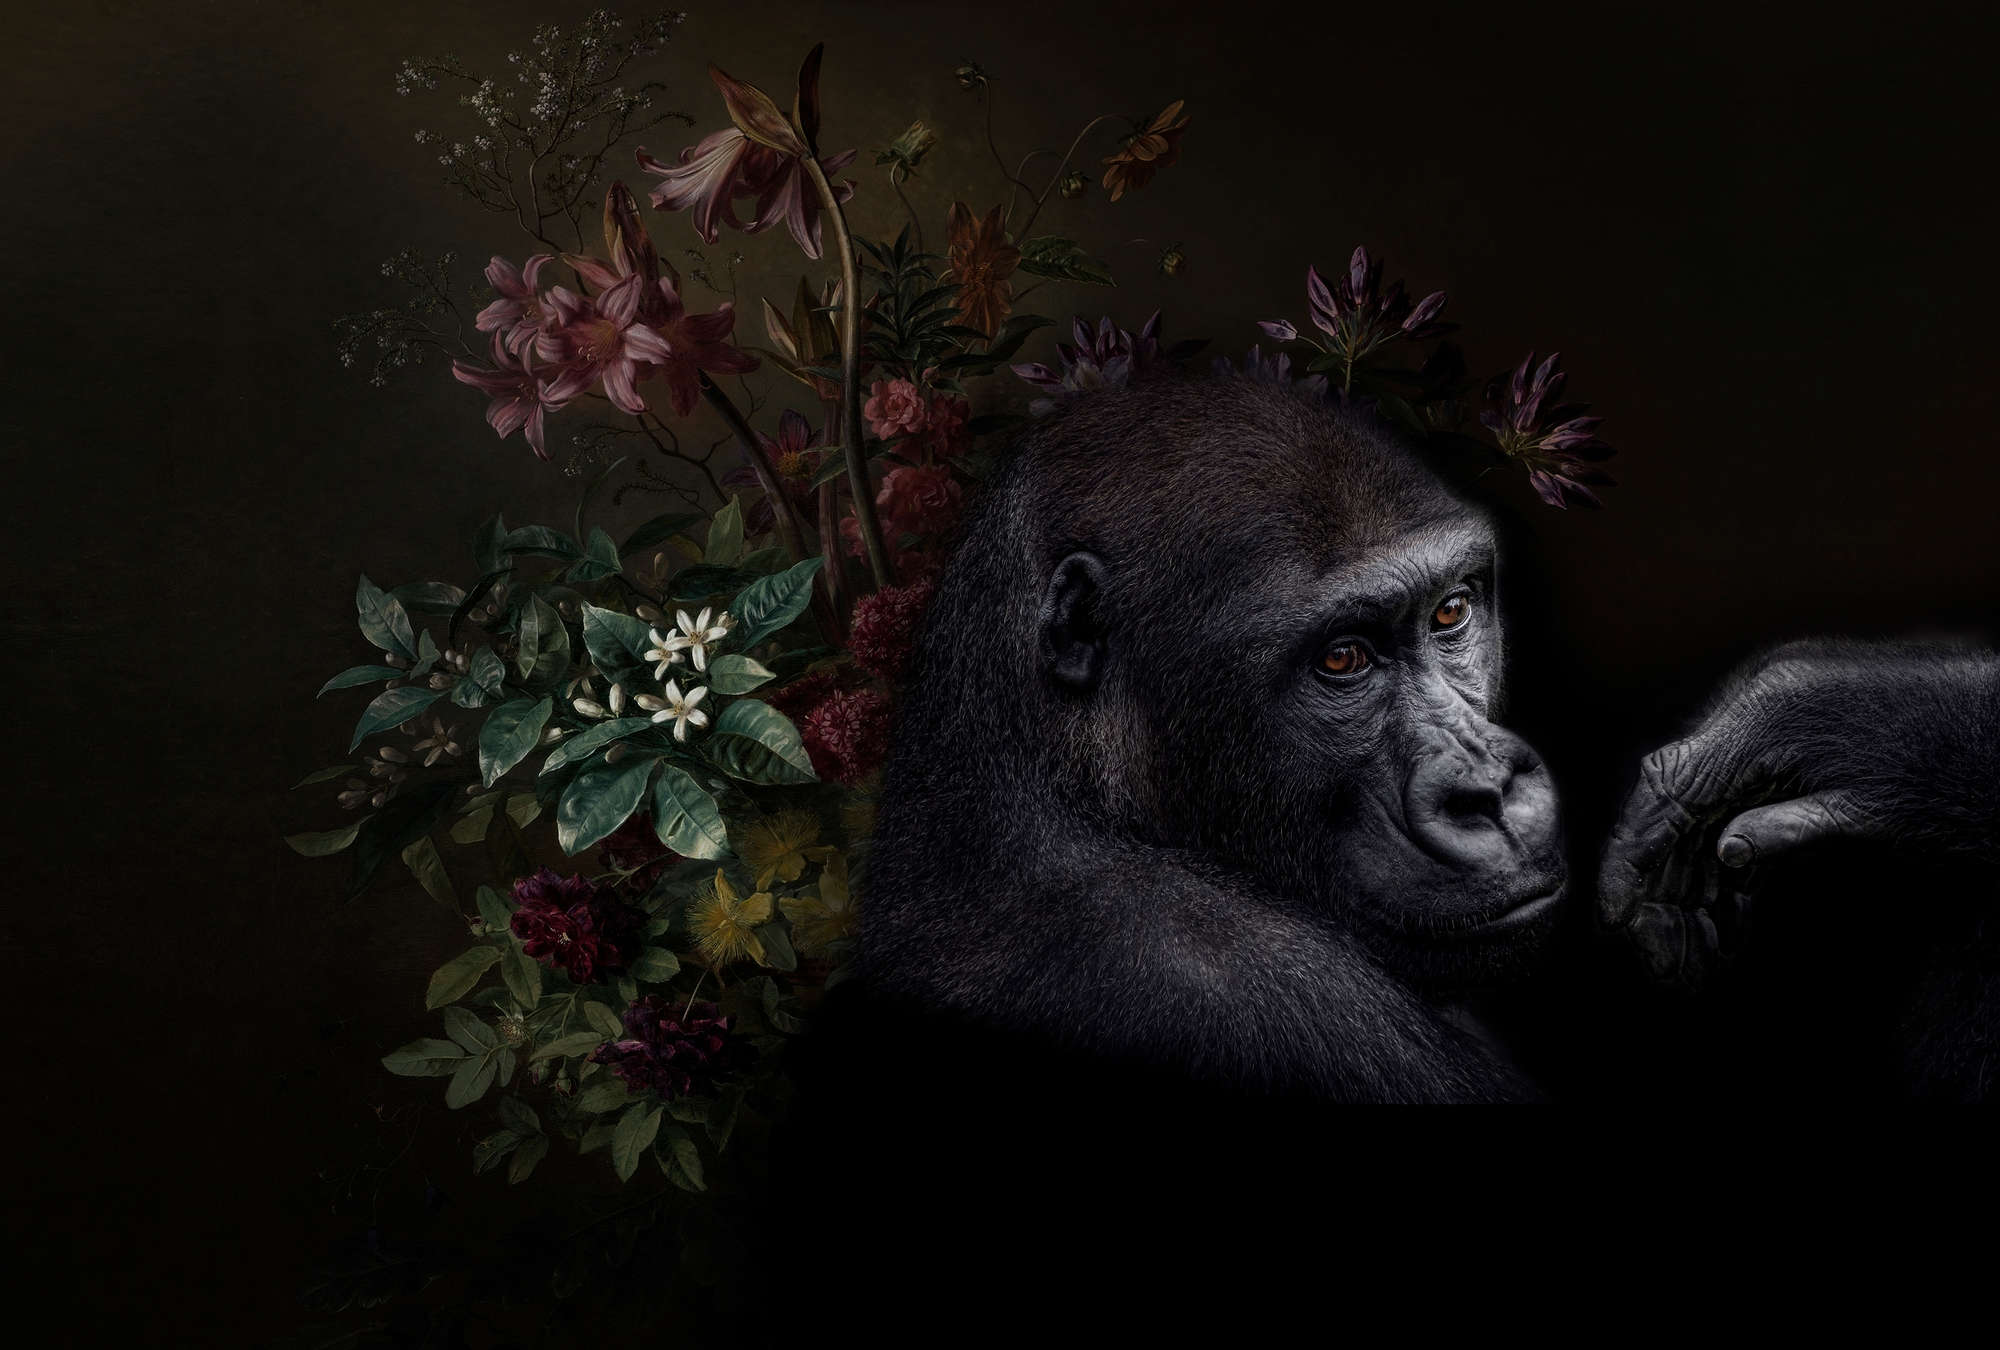             Fotomurali Gorilla Ritratto con fiori - Walls by Patel
        